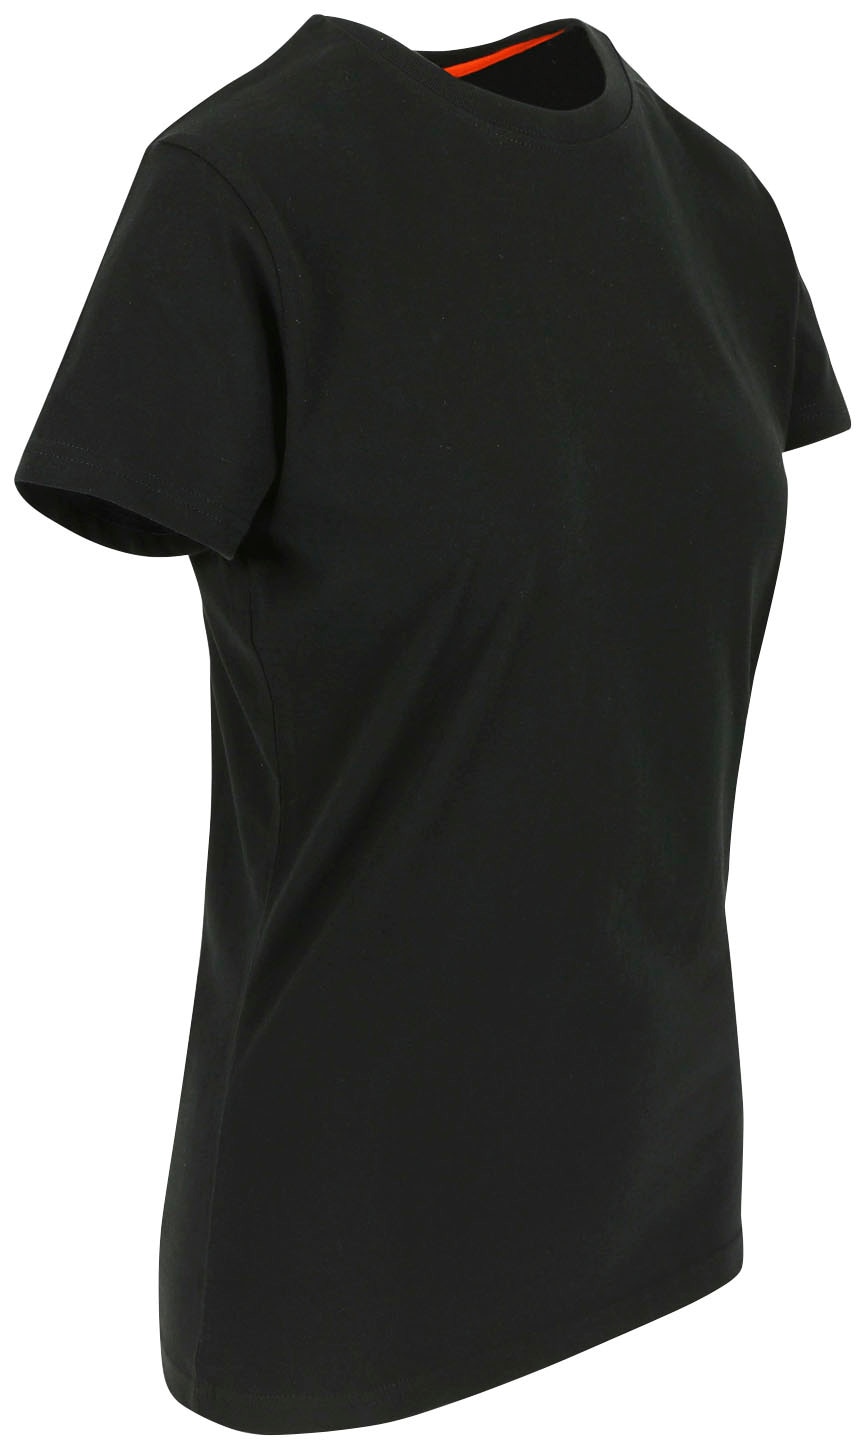 »Epona Herock T-Shirt T-Shirt Kurzärmlig jetzt Damen« bestellen